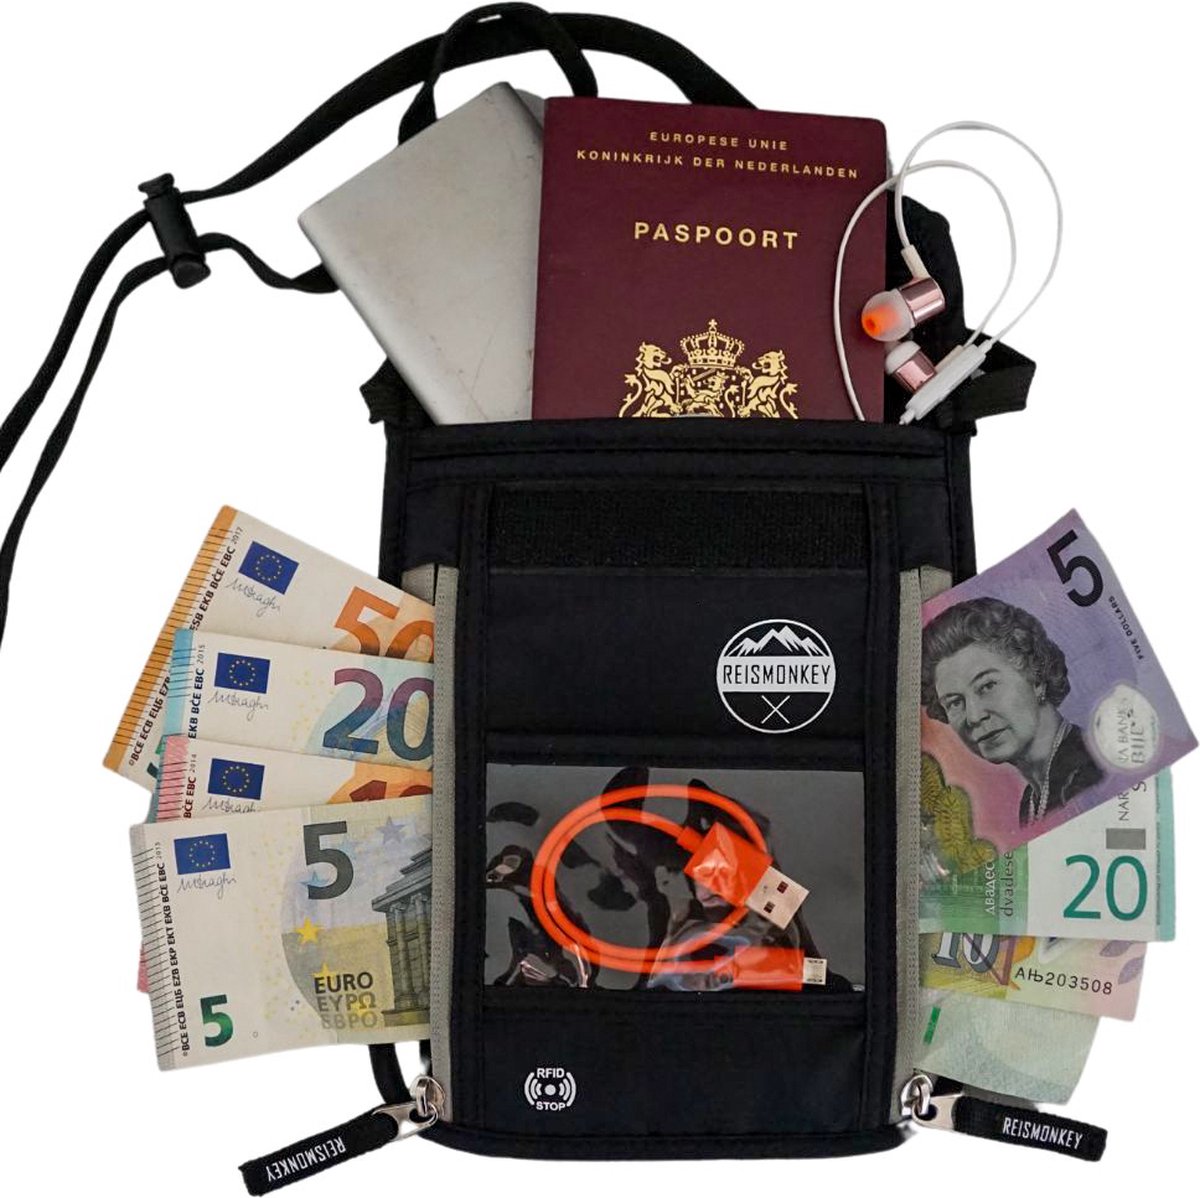 Nektasje RFID - Reisportemonnee - Nektasje voor paspoort - voor dames en heren - Waterafstotend - Travel wallet - Veilig op reis - Reismonkey